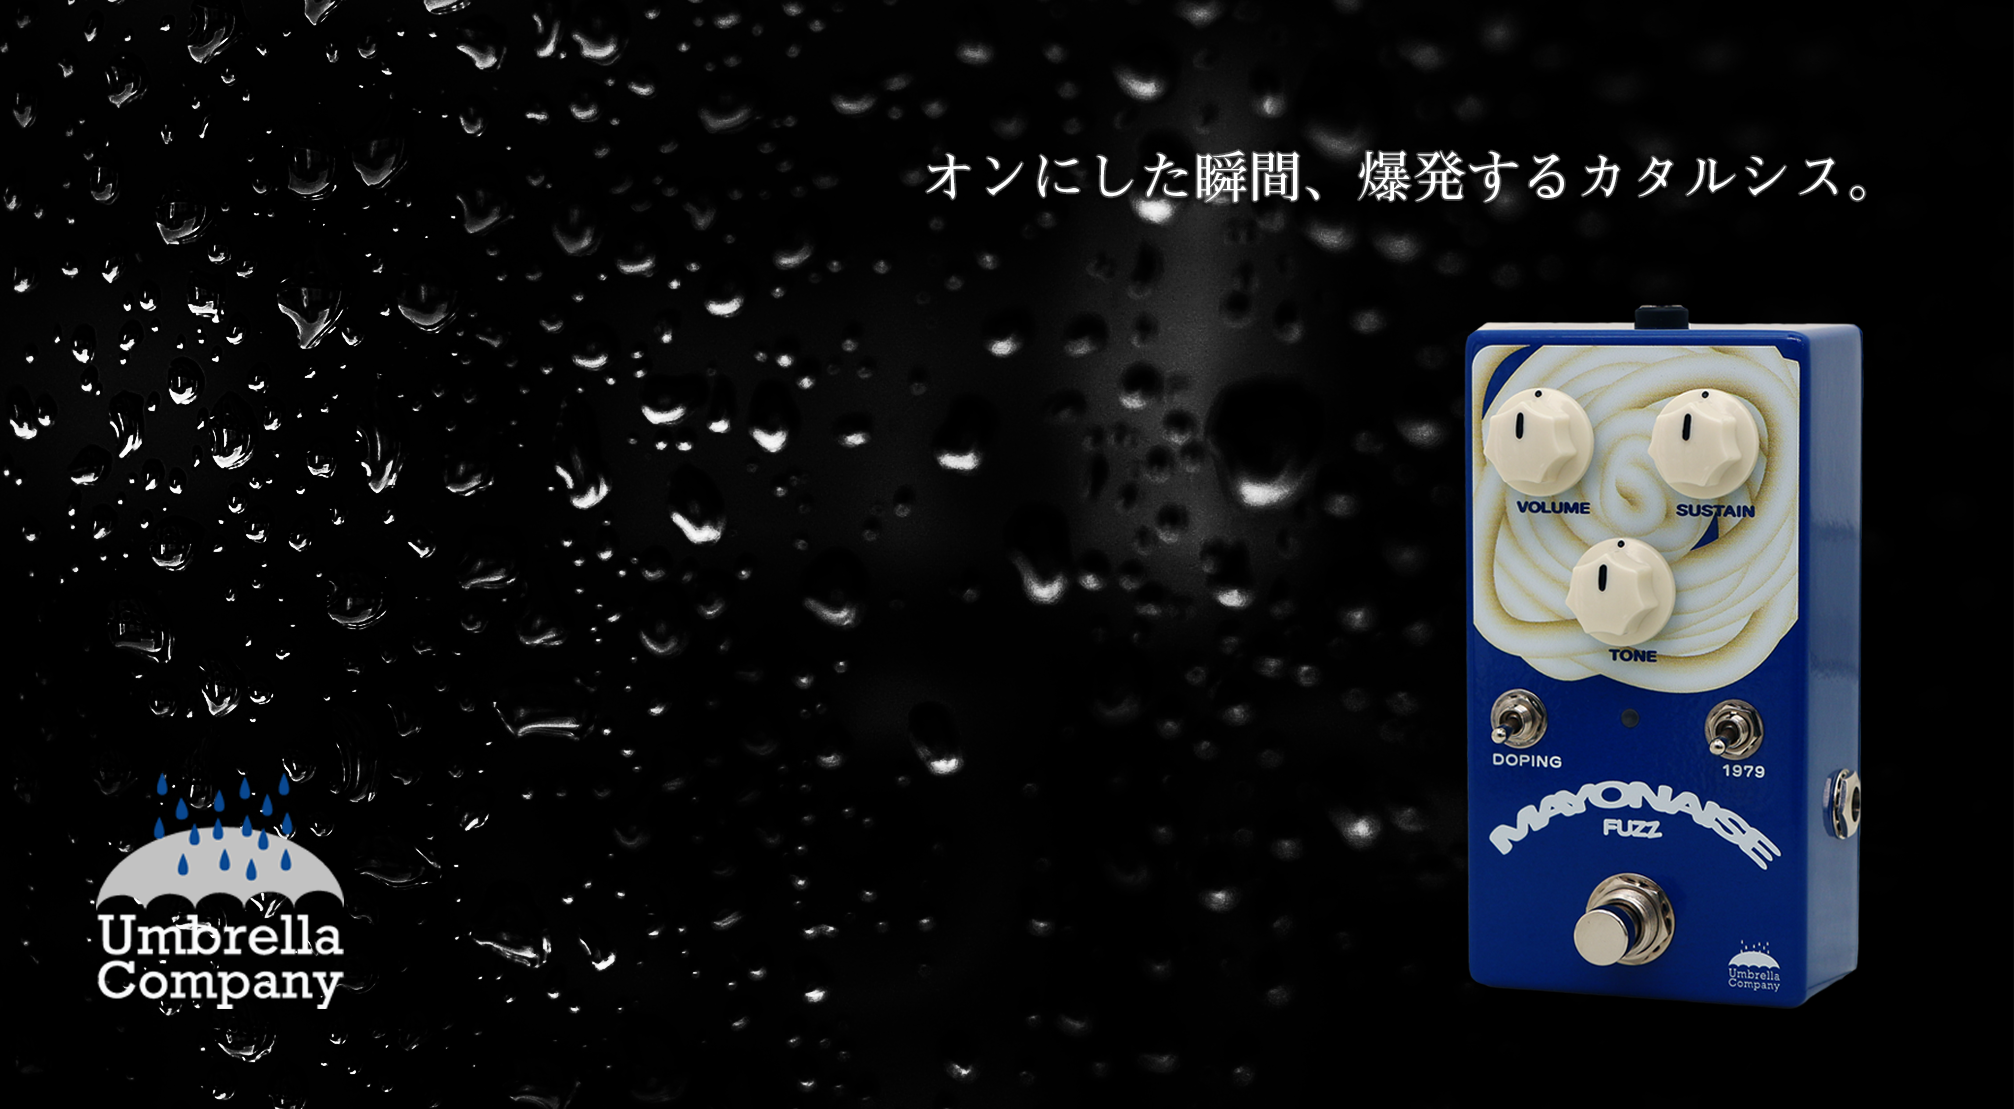 Umbrella Company “Mayonaise Fuzz” 発売開始！ | Umbrella Company